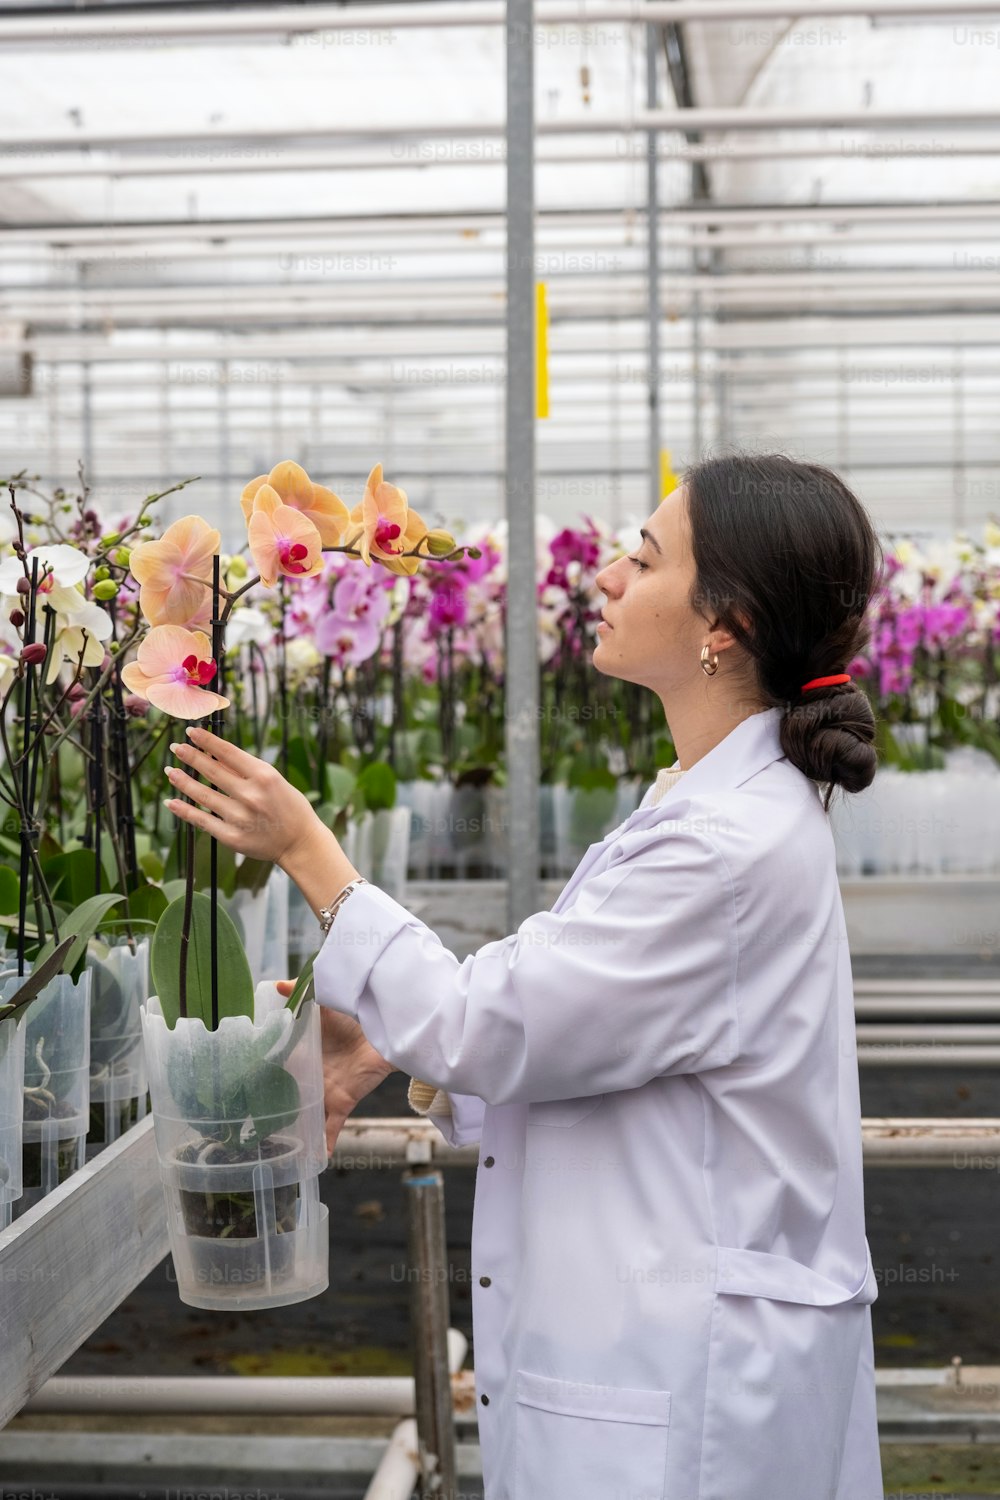 Una mujer con una bata blanca de laboratorio está mirando flores en un invernadero